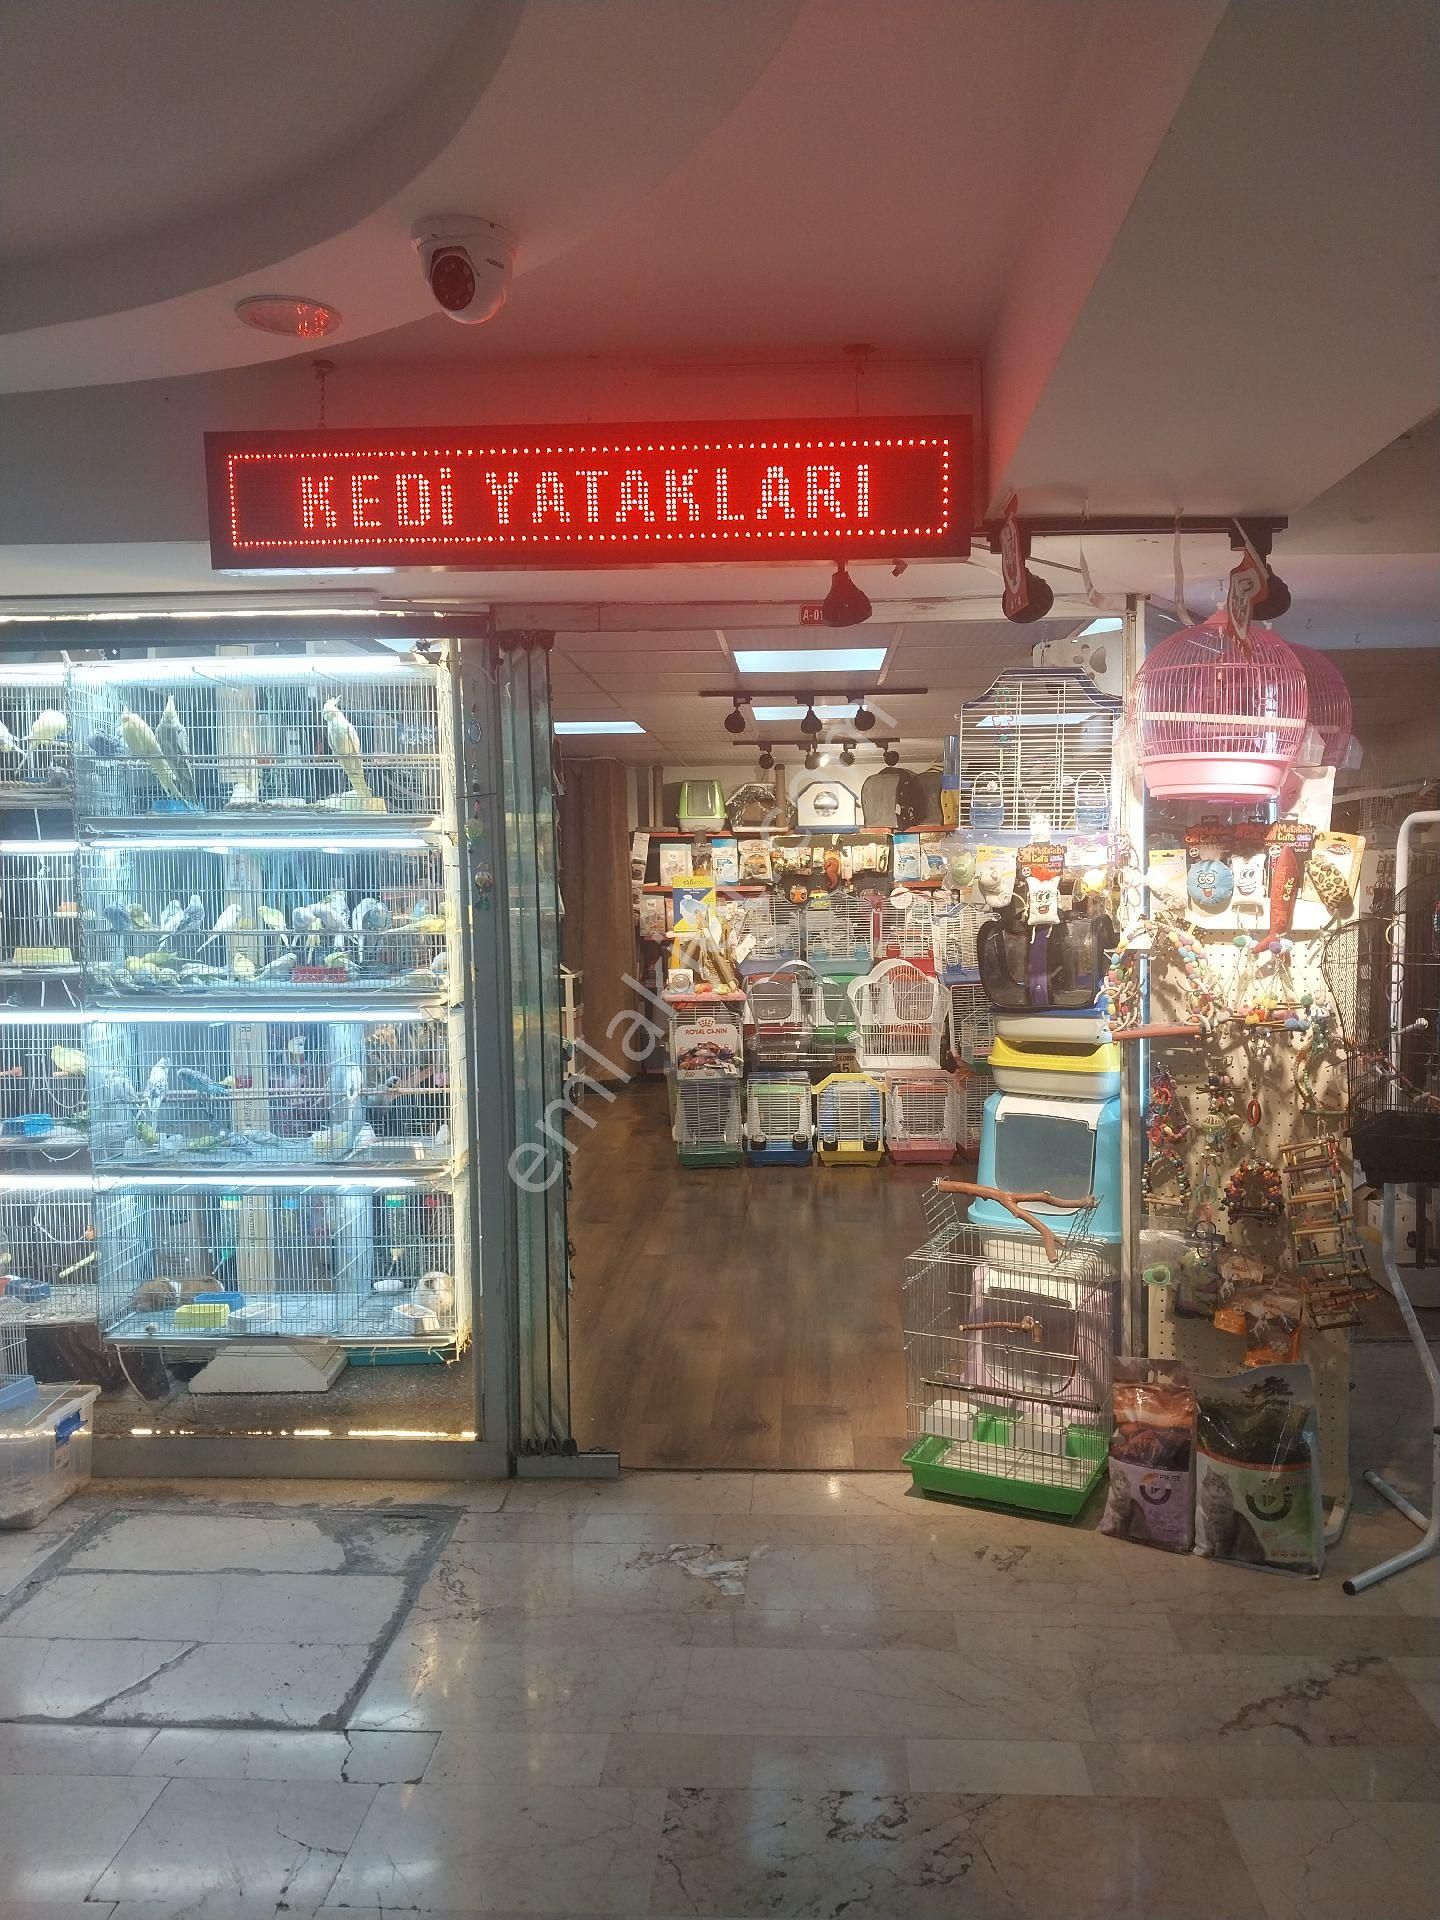 Odunpazarı İstiklal Satılık Dükkan & Mağaza CENTURY21 VİZYON'DAN ESNAF SARAYIN'DA SATILIK DÜKKAN 